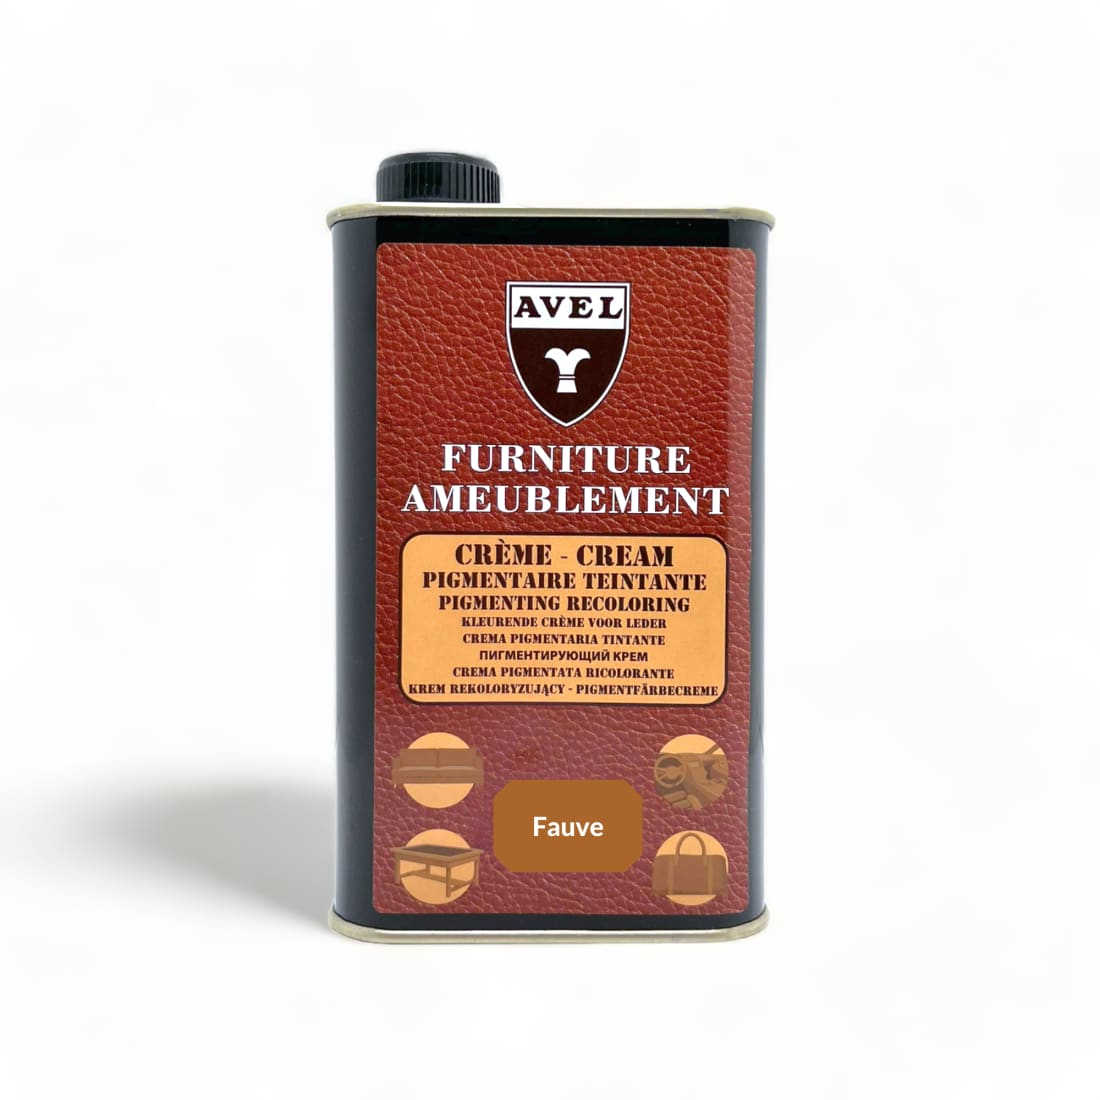 Crème Pigmentaire Teintante Fauve - Avel - 375 ml -